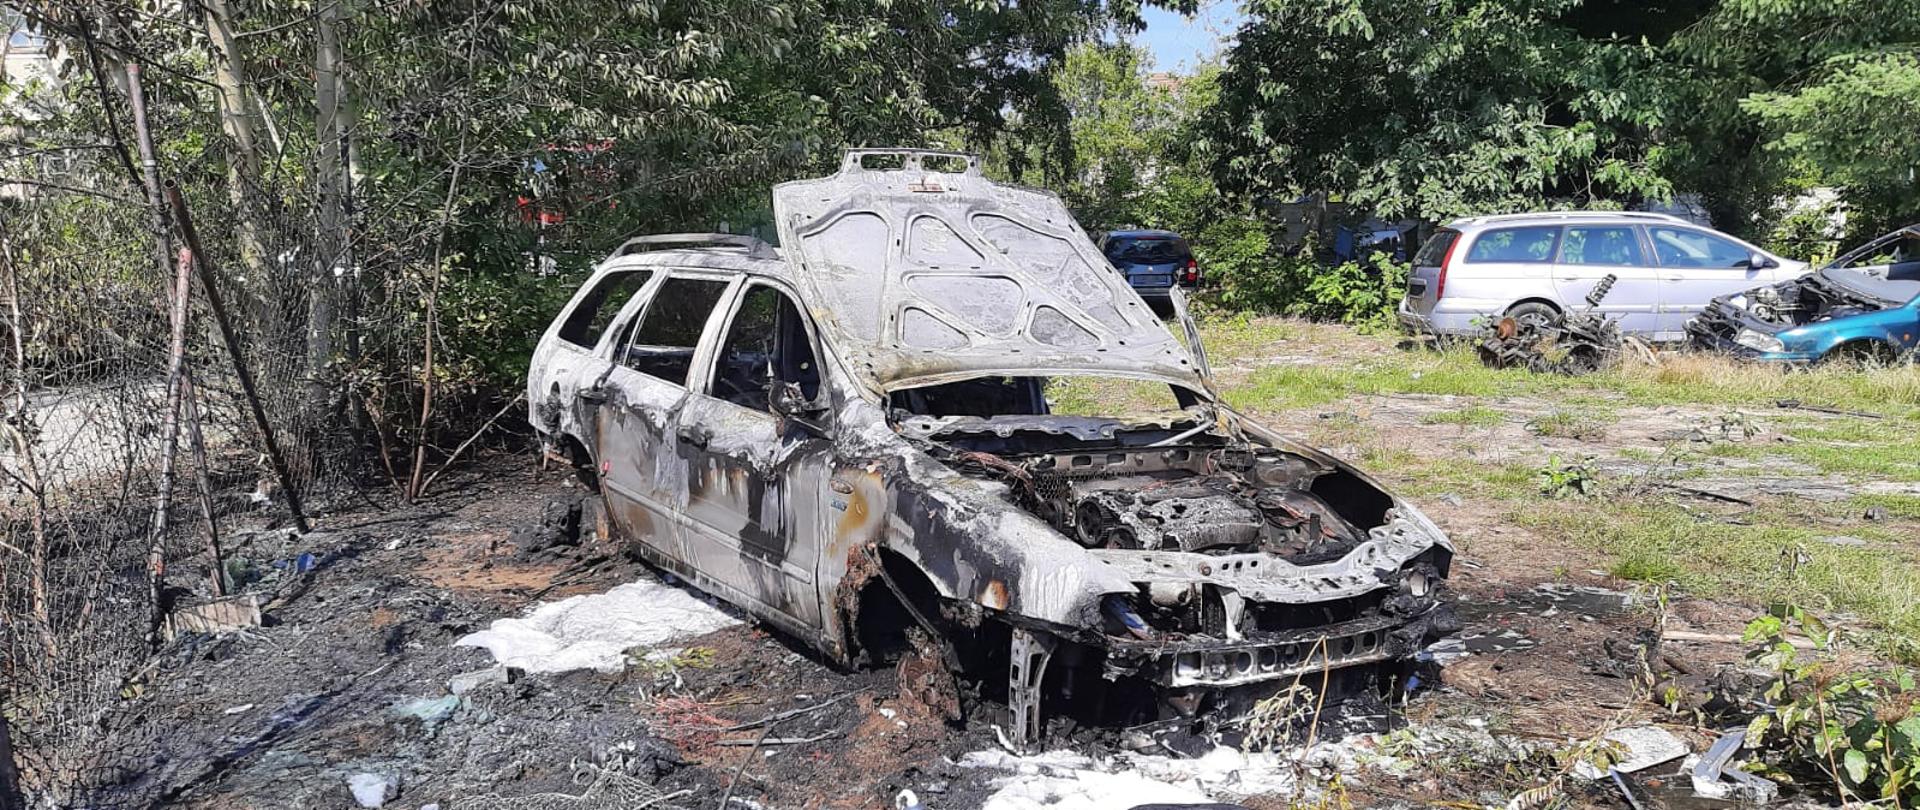 Zdjęcie przedstawia samochód osobowy z podniesioną maską, który objęty był pożarem. W oddali widoczne są samochody oraz części samochodowe.